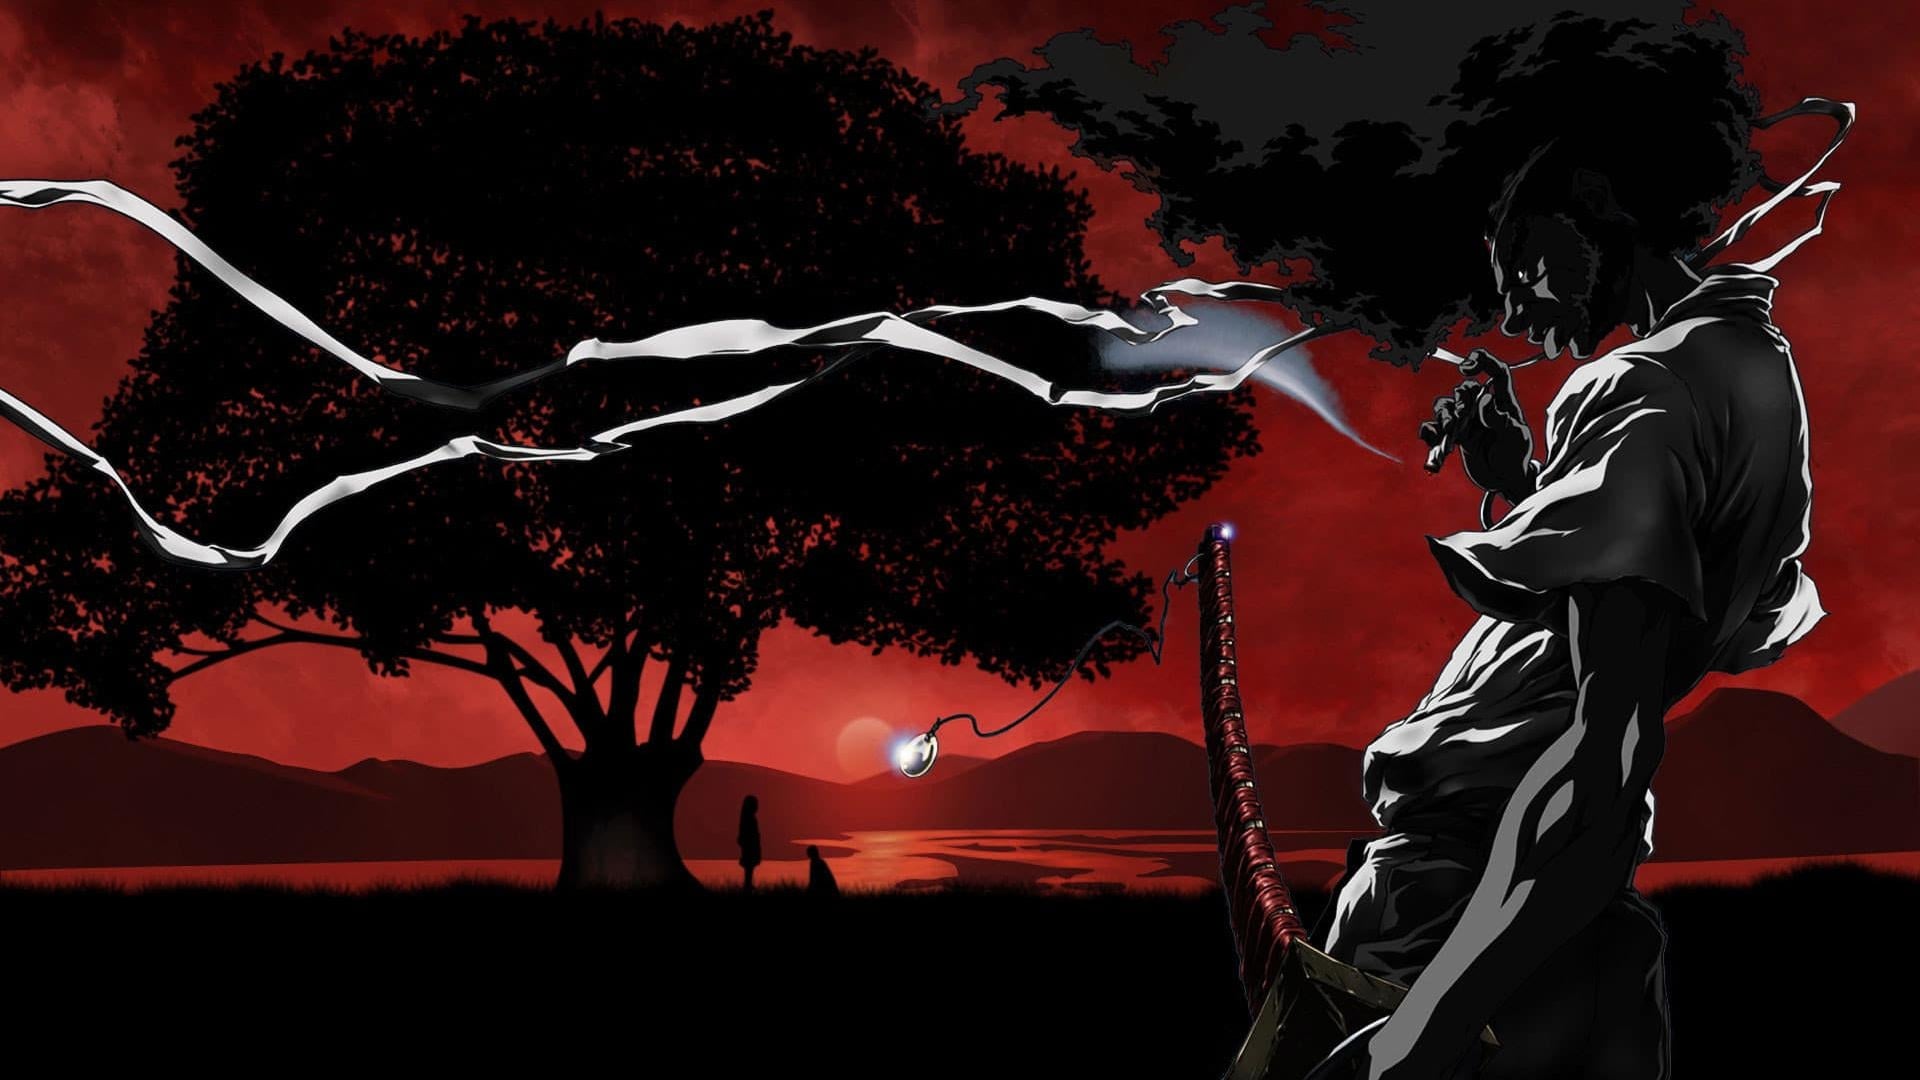 Африканський самурай: Воскресіння